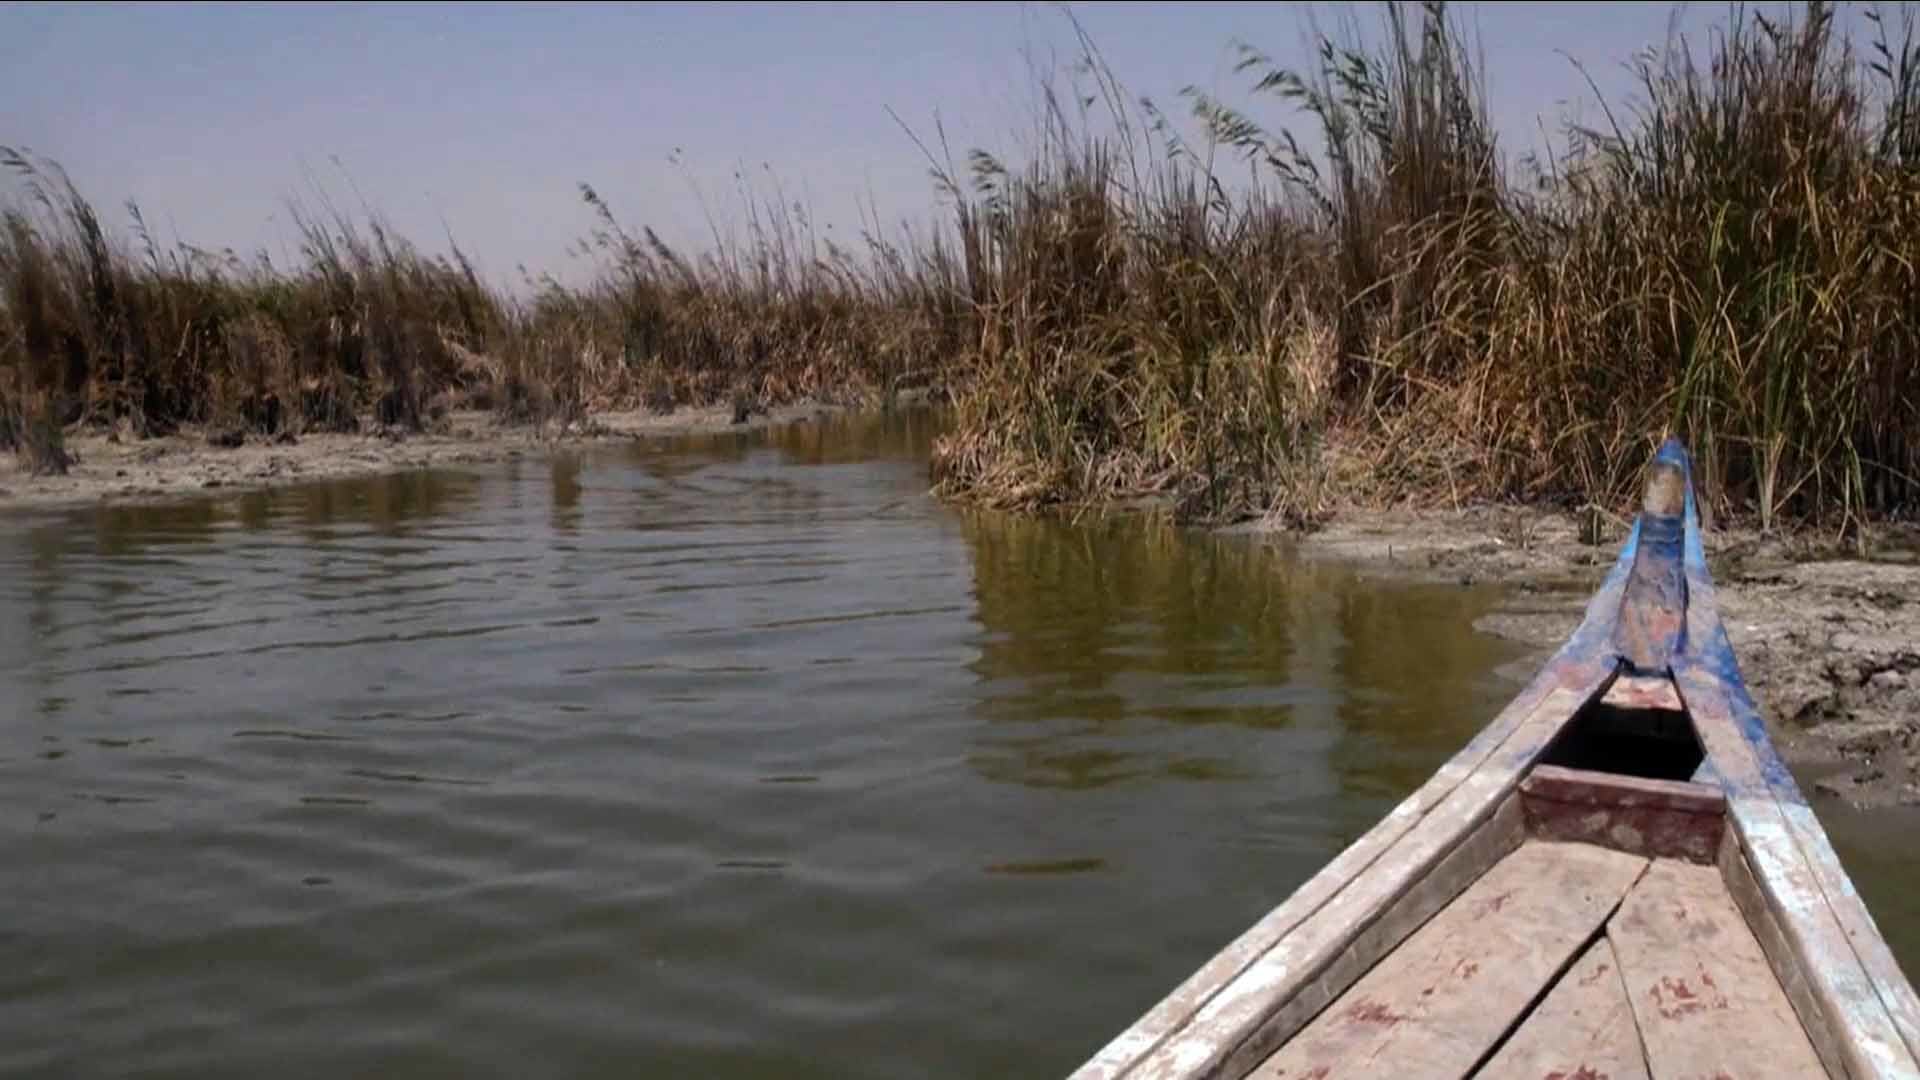 تأثرت منطقة الأهوار في العراق بشدة بتغير المناخ وتقلصت كميات المياه.